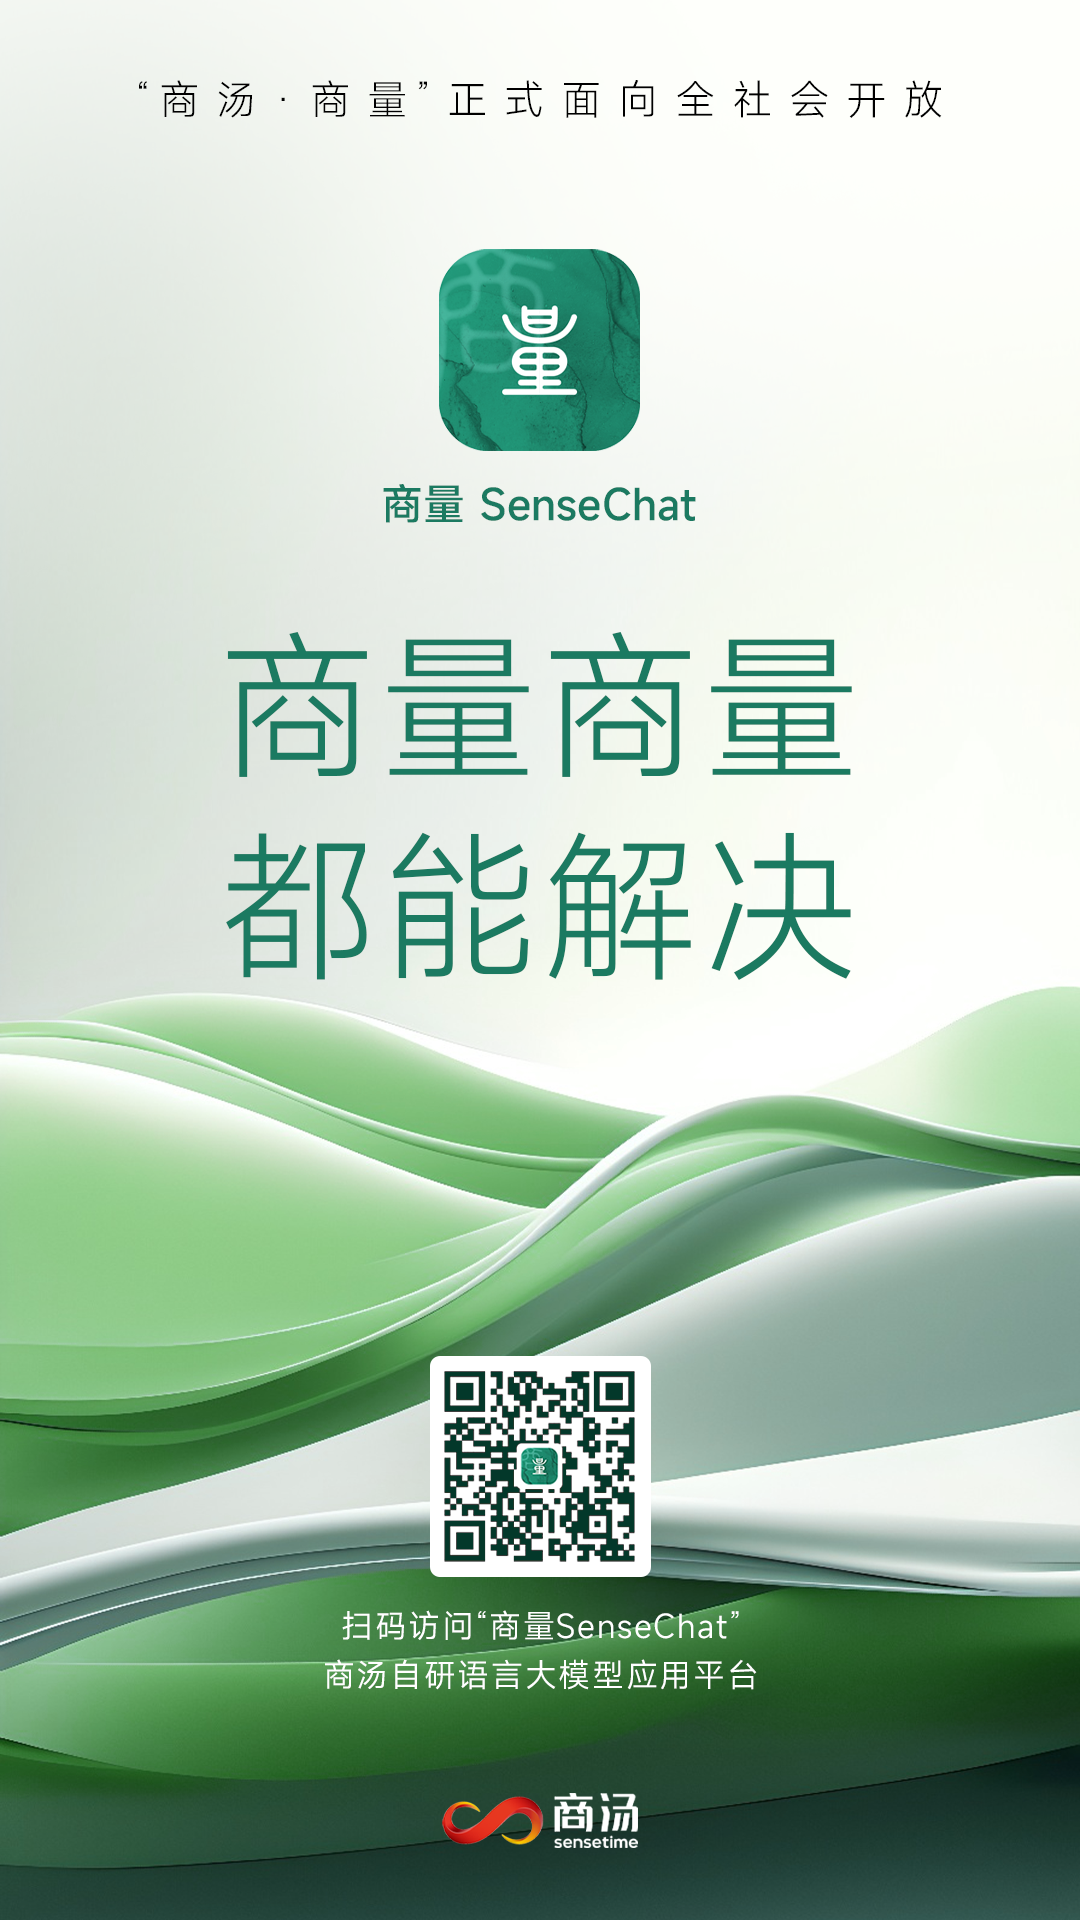 大语言模型应用“商量SenseChat”即日起开放服务